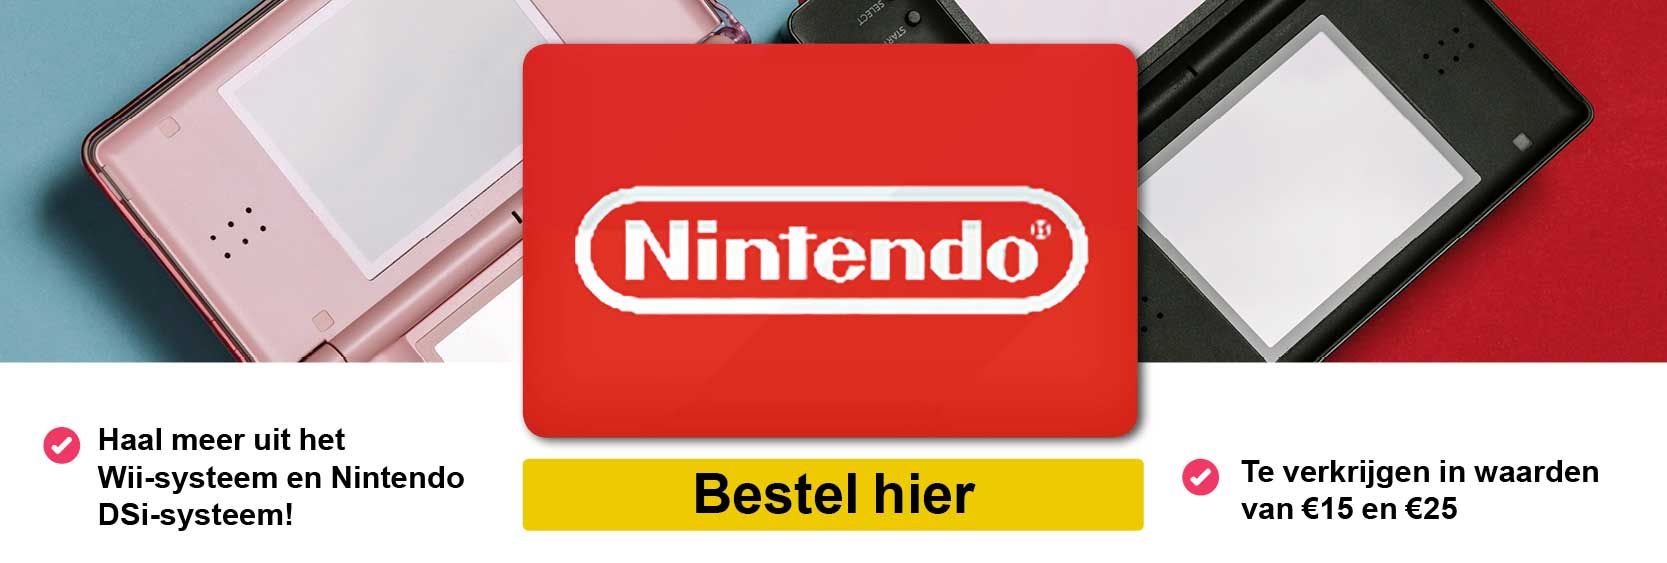 Nintendo_banner_def